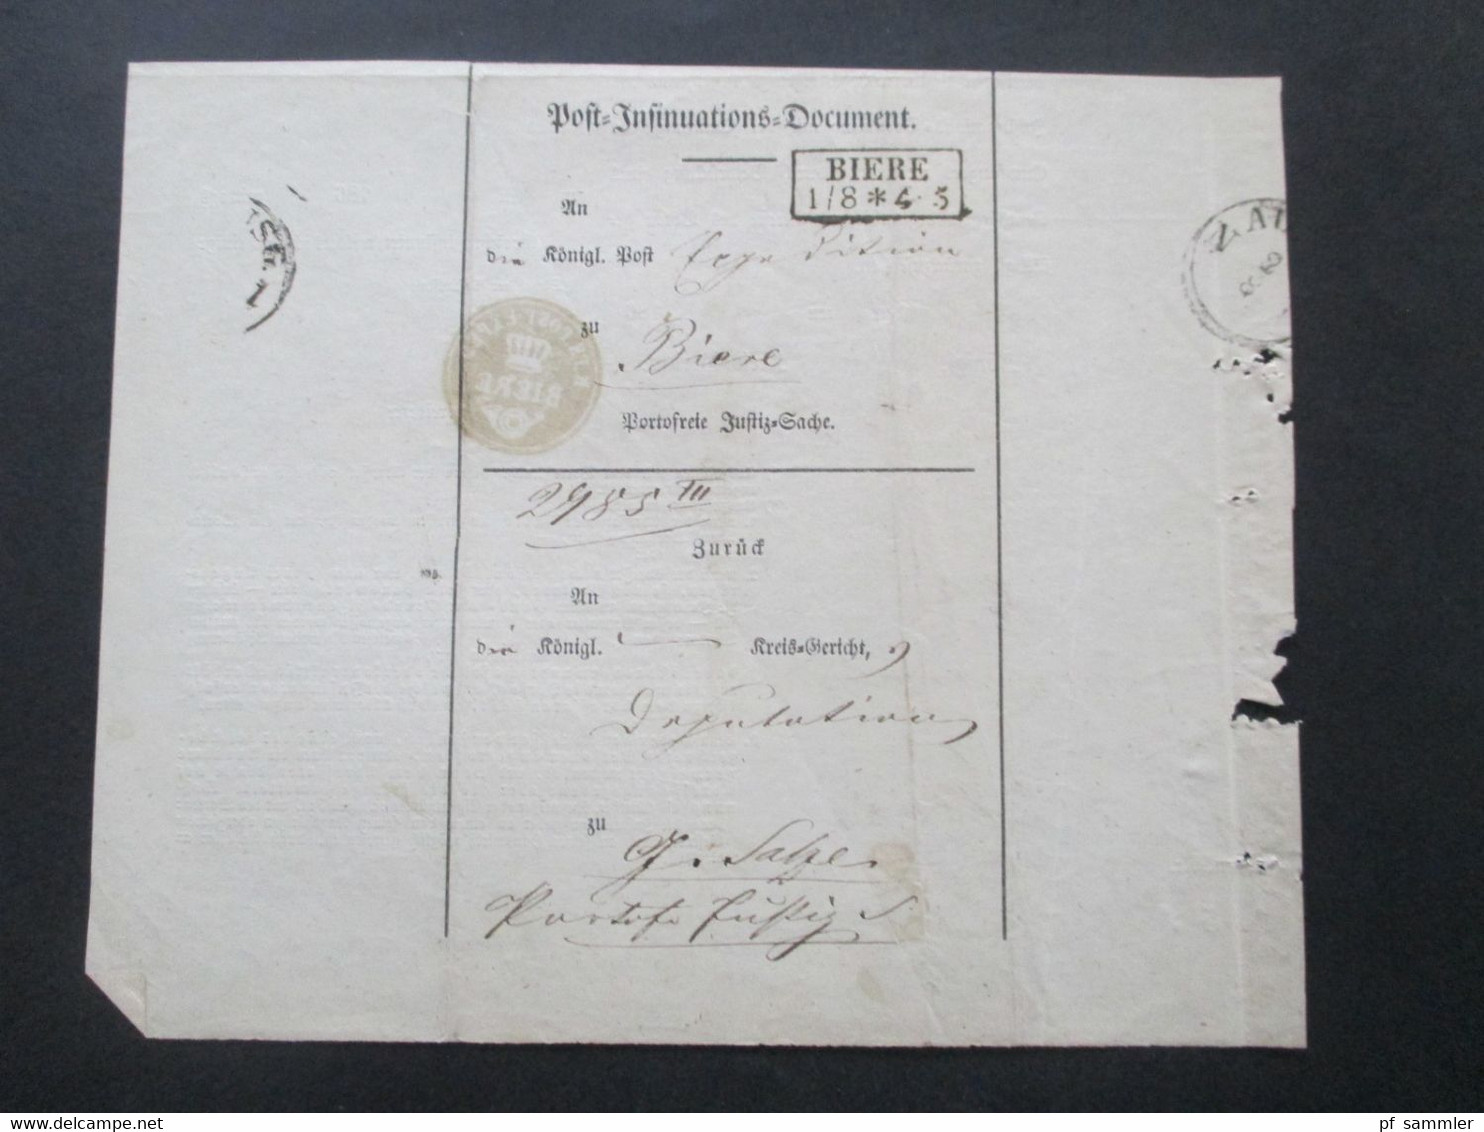 Altdeutschland Sachsen 1.8.1862 Beleg / Post Behändigungsschein Portofreie Justizsache Stp. K. Pr. Post Exped. Biere - Saxe